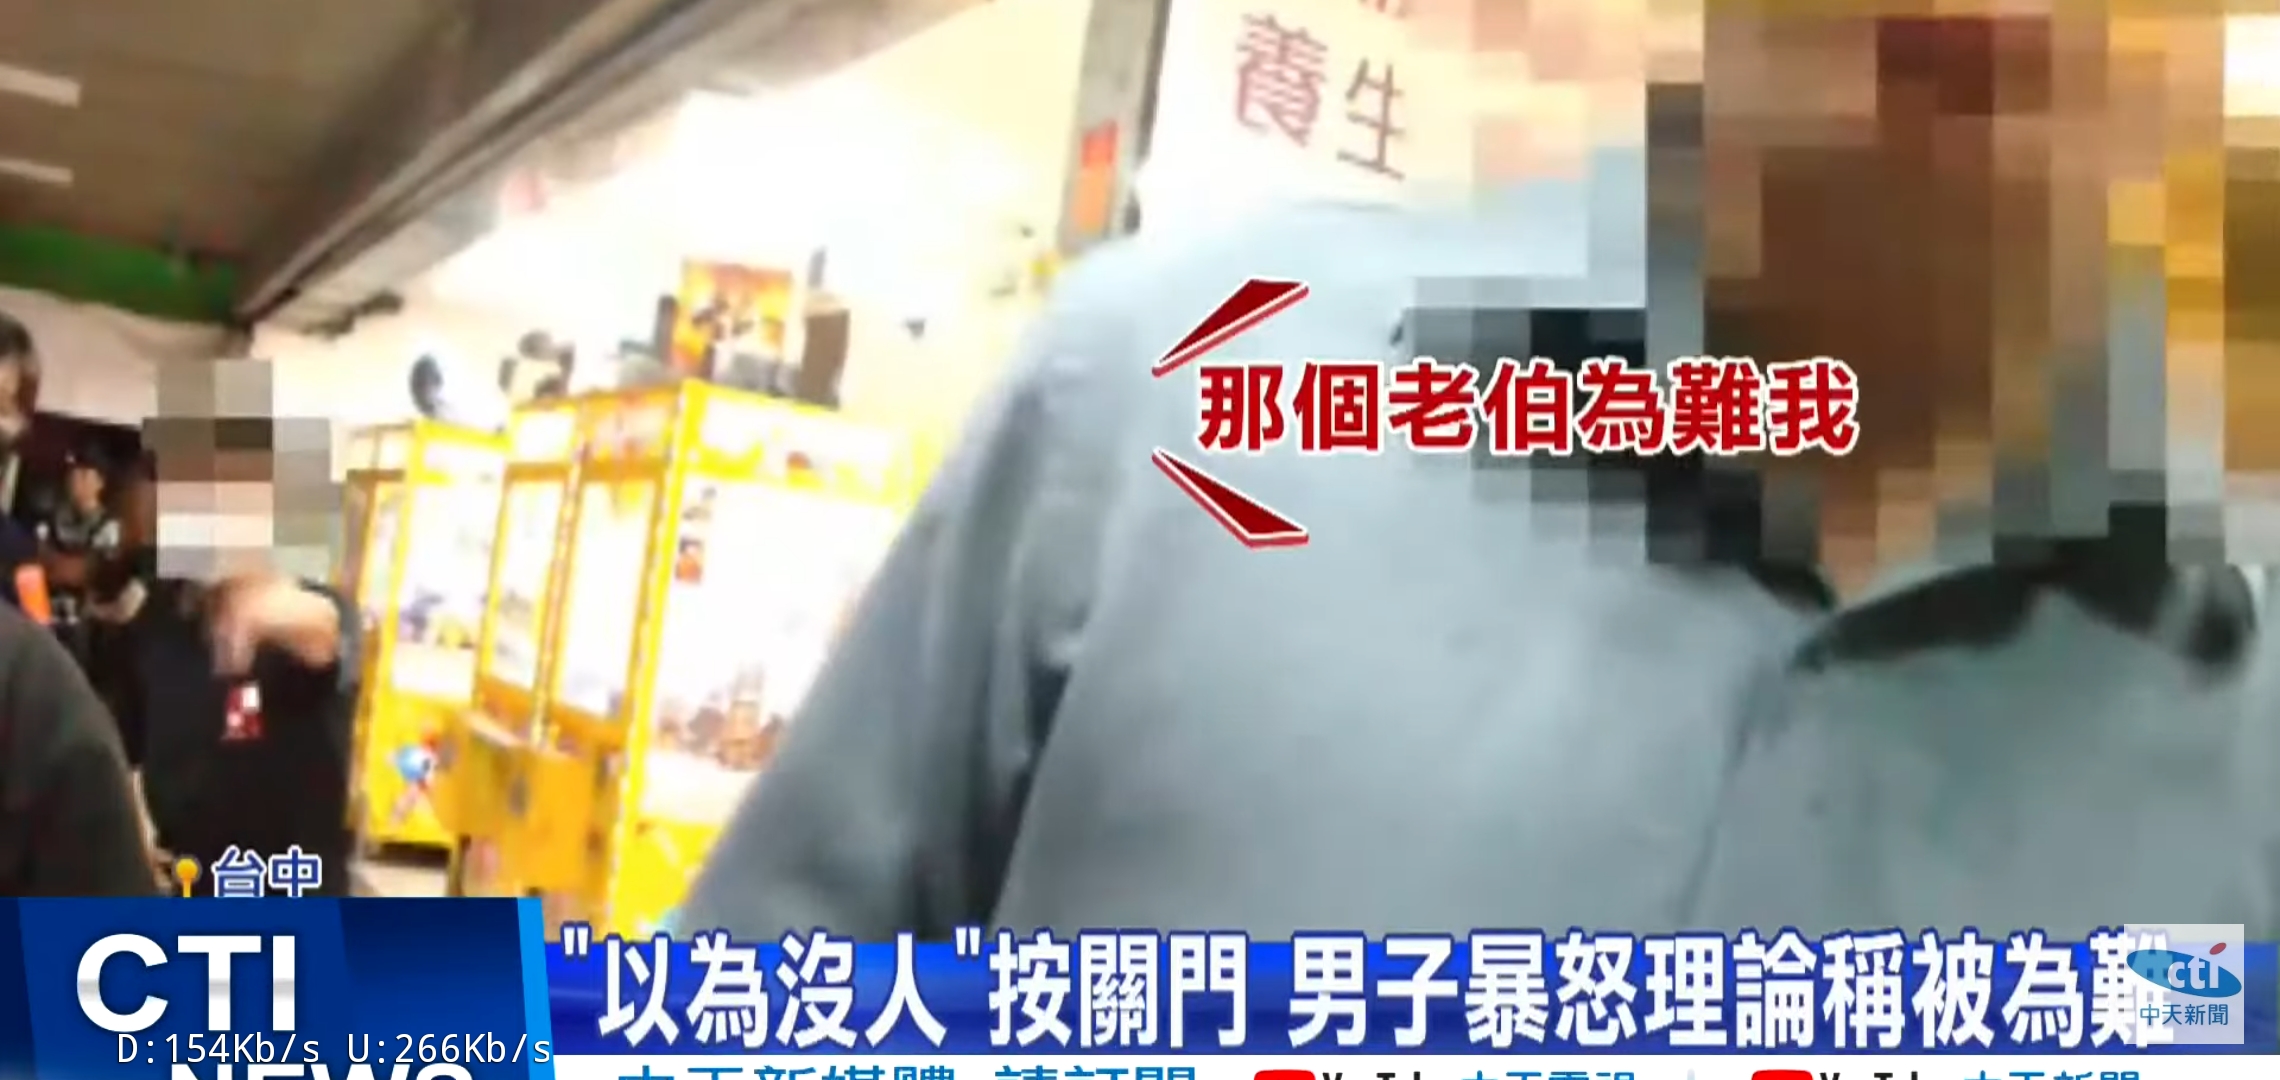 圖https://upload.cc/i1/2022/07/01/2KzcMO.jpg, 台中西屯男被電梯夾到爆氣 欺負阿伯